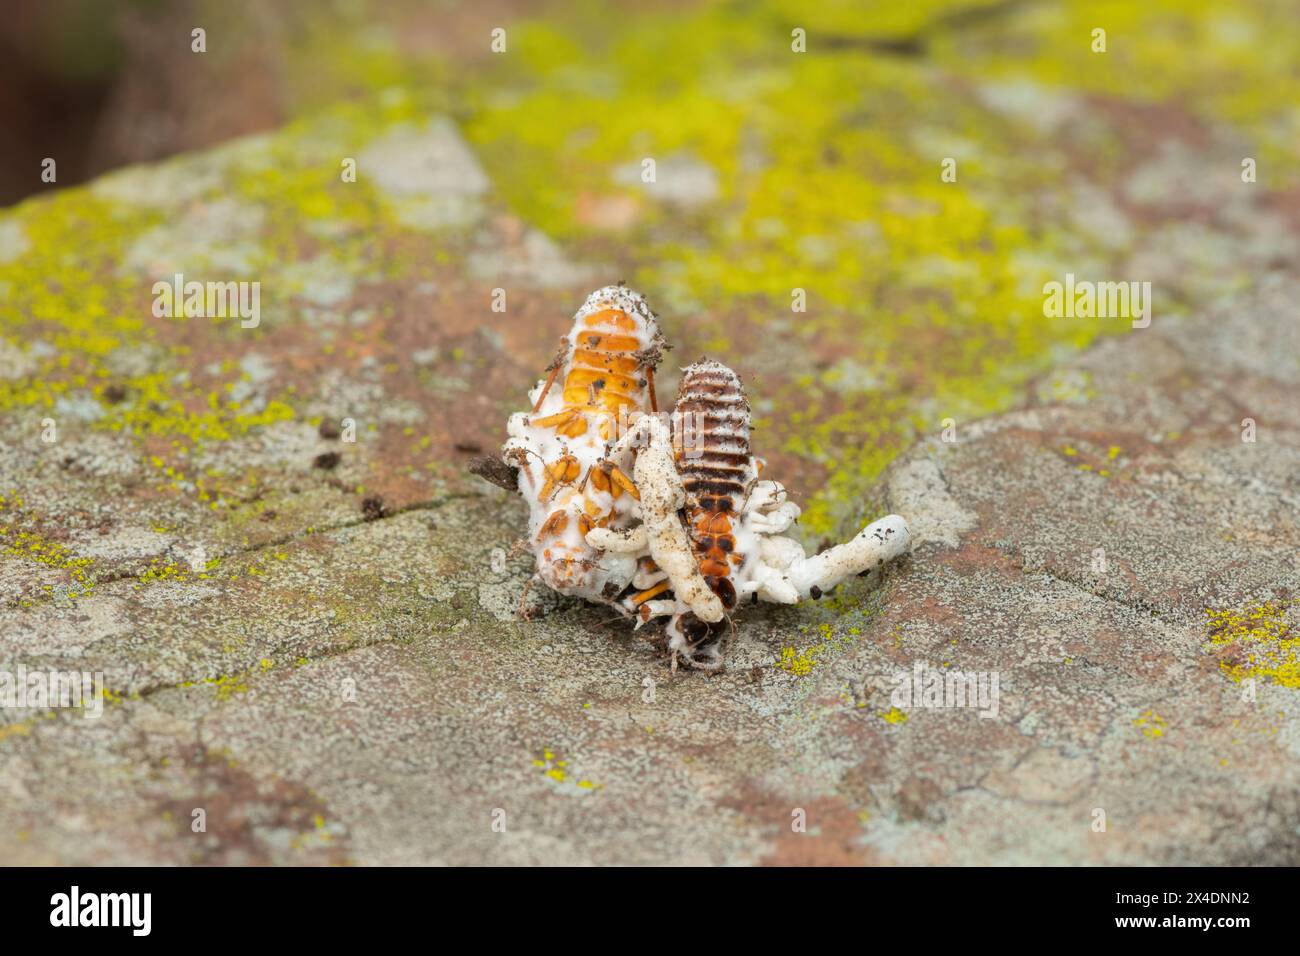 Champignon Cordyceps (famille des Cordycipitaceae, Cordyceps sp.) infecter un termite volant Banque D'Images